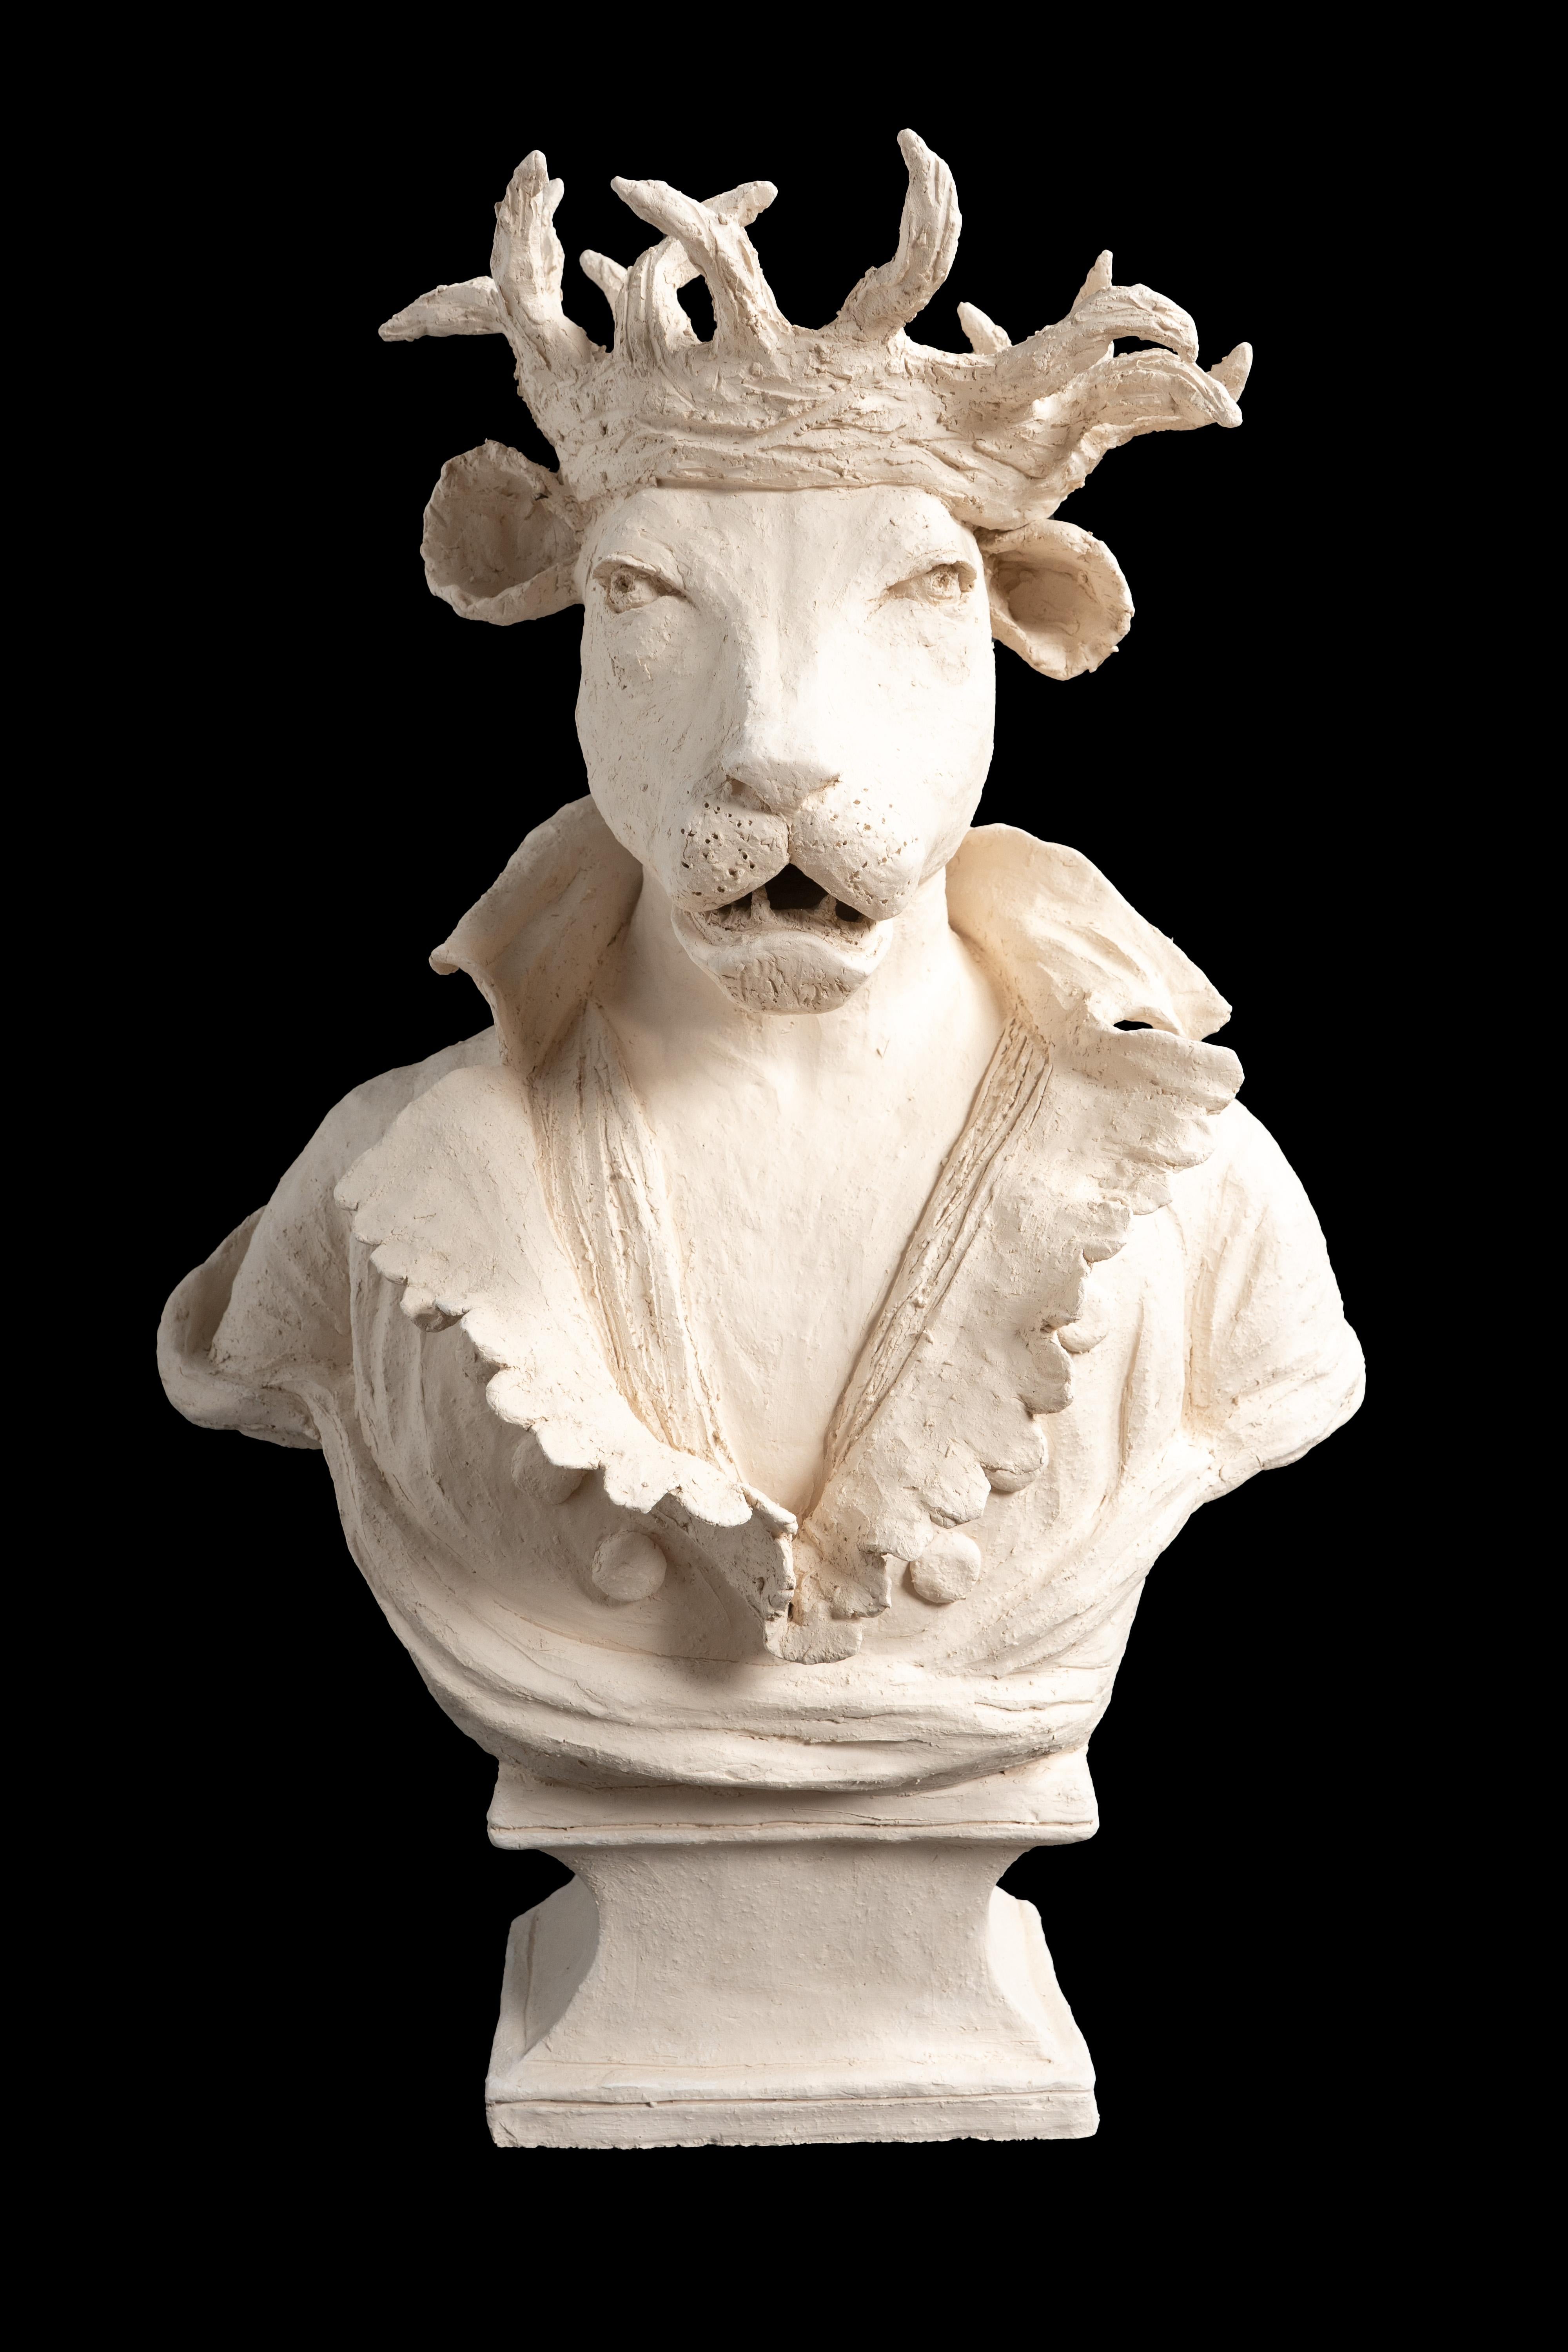 Figure anthropomorphe en terre cuite d'un lion de montagne portant une couronne d'épines dans un costume du XIXe siècle par Laurence Lenglare

Dimensions : 19